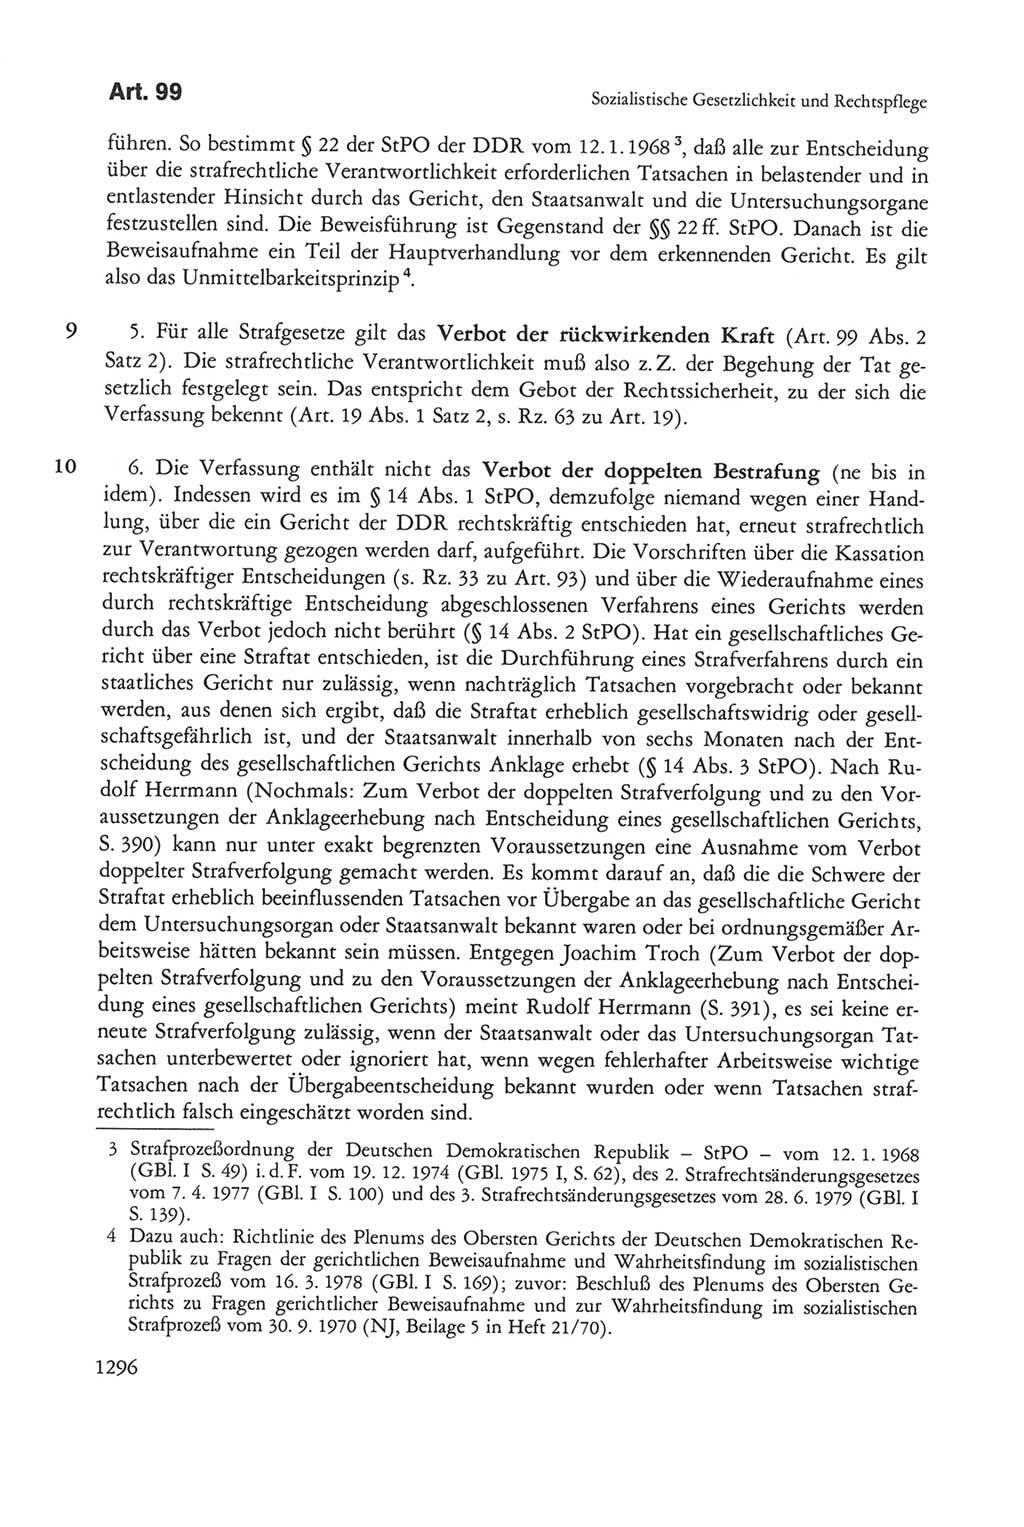 Die sozialistische Verfassung der Deutschen Demokratischen Republik (DDR), Kommentar mit einem Nachtrag 1997, Seite 1296 (Soz. Verf. DDR Komm. Nachtr. 1997, S. 1296)